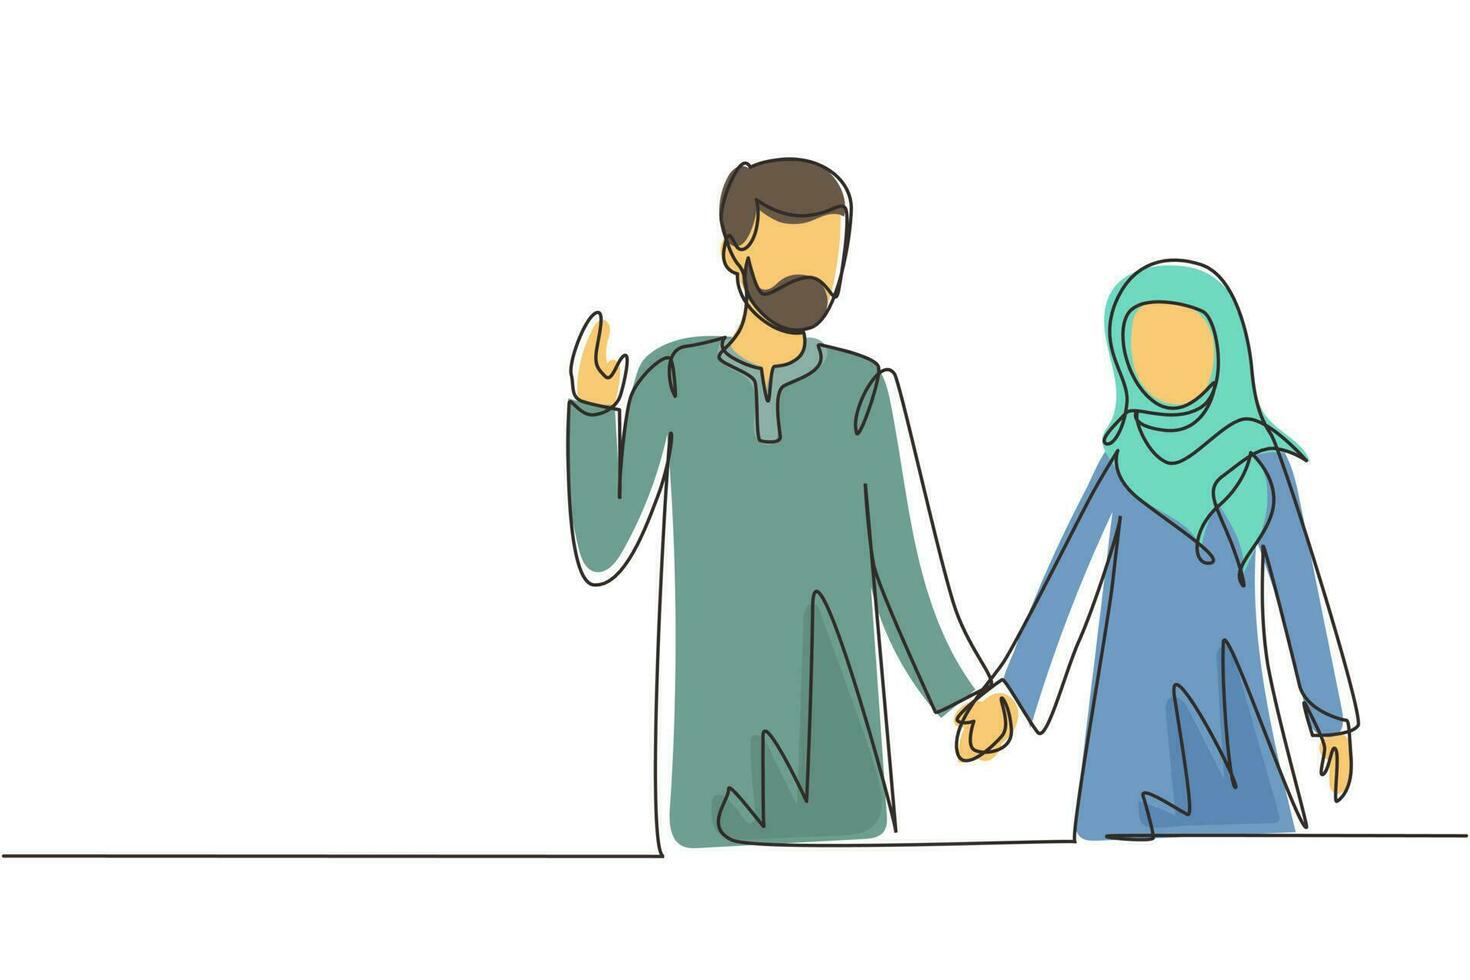 disegno a linea continua singola giovane coppia araba innamorata mano nella mano. coppia romantica innamorata che trascorre del tempo insieme all'aperto. concetto di famiglia felice. illustrazione vettoriale di un disegno grafico a una linea